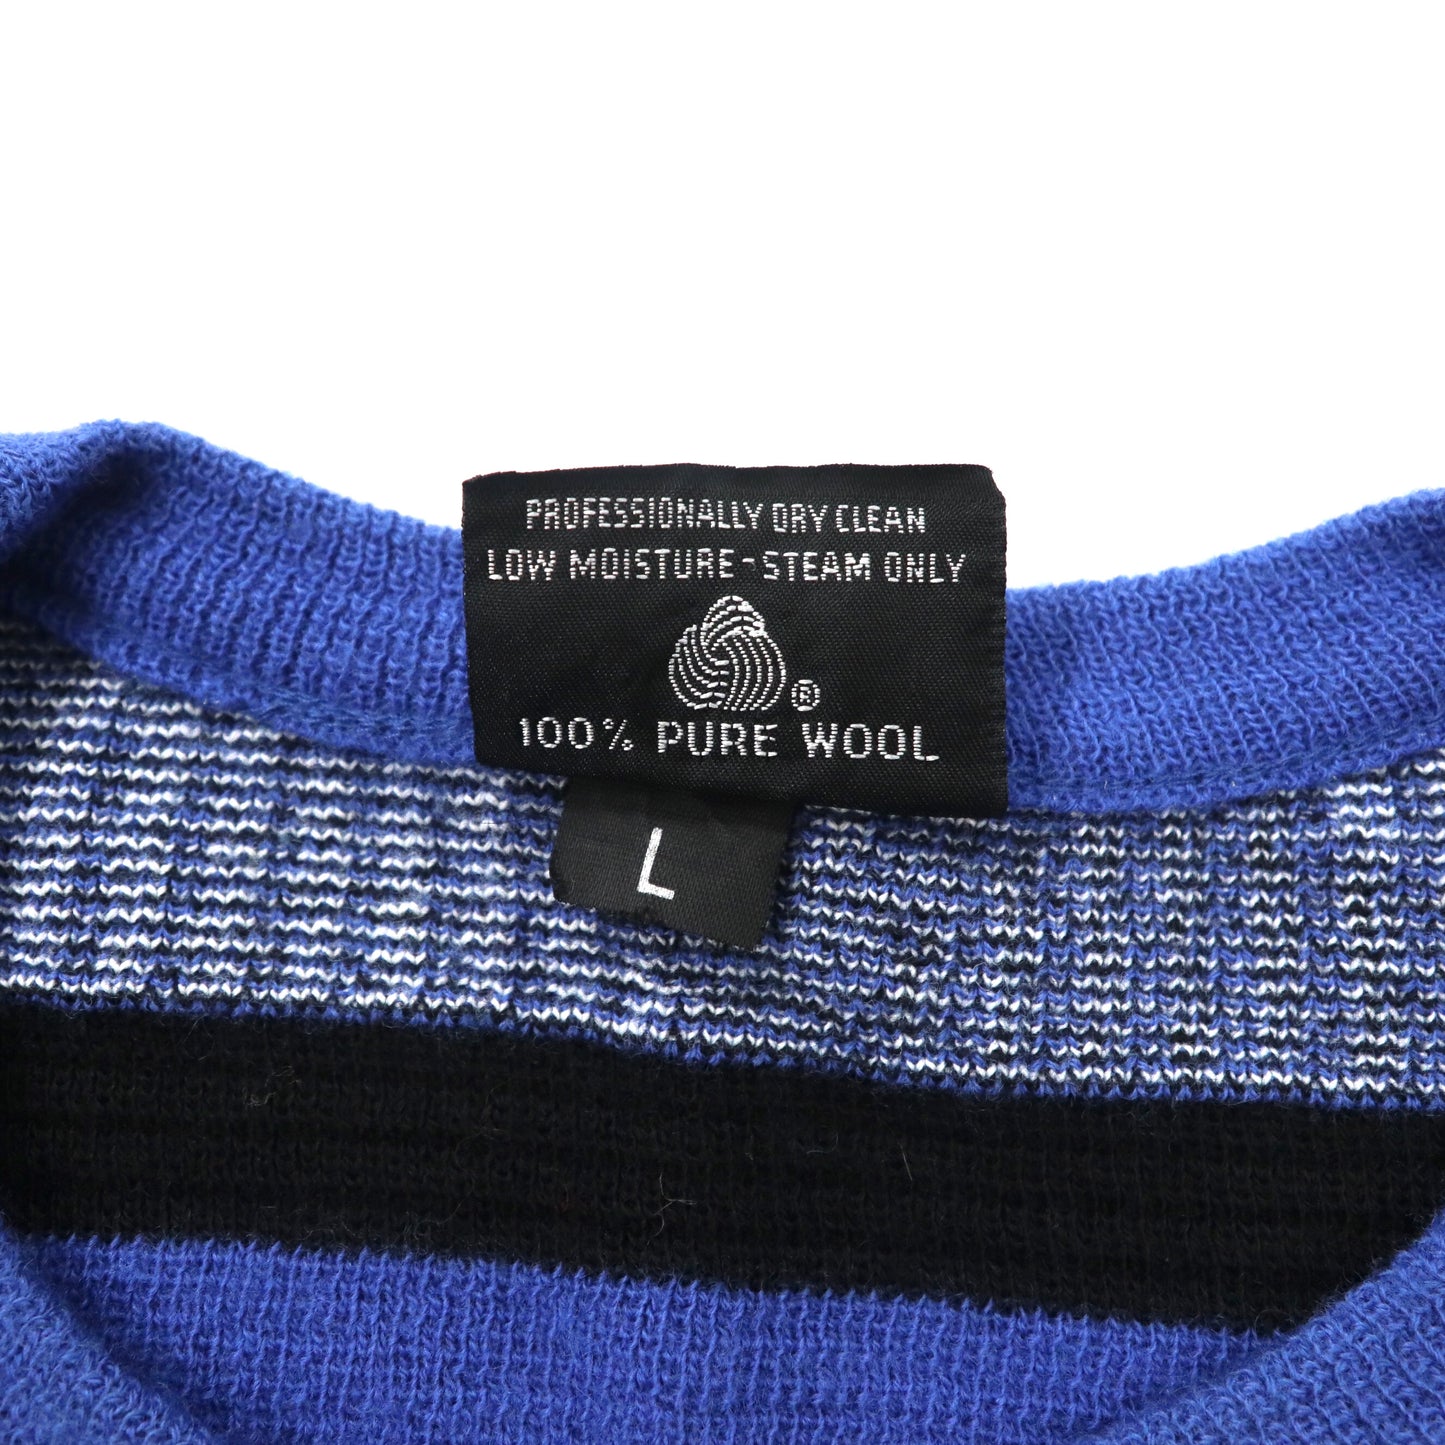 Lido Sports 幾何学柄 ニット セーター L ブルー ウール 90年代 USA製